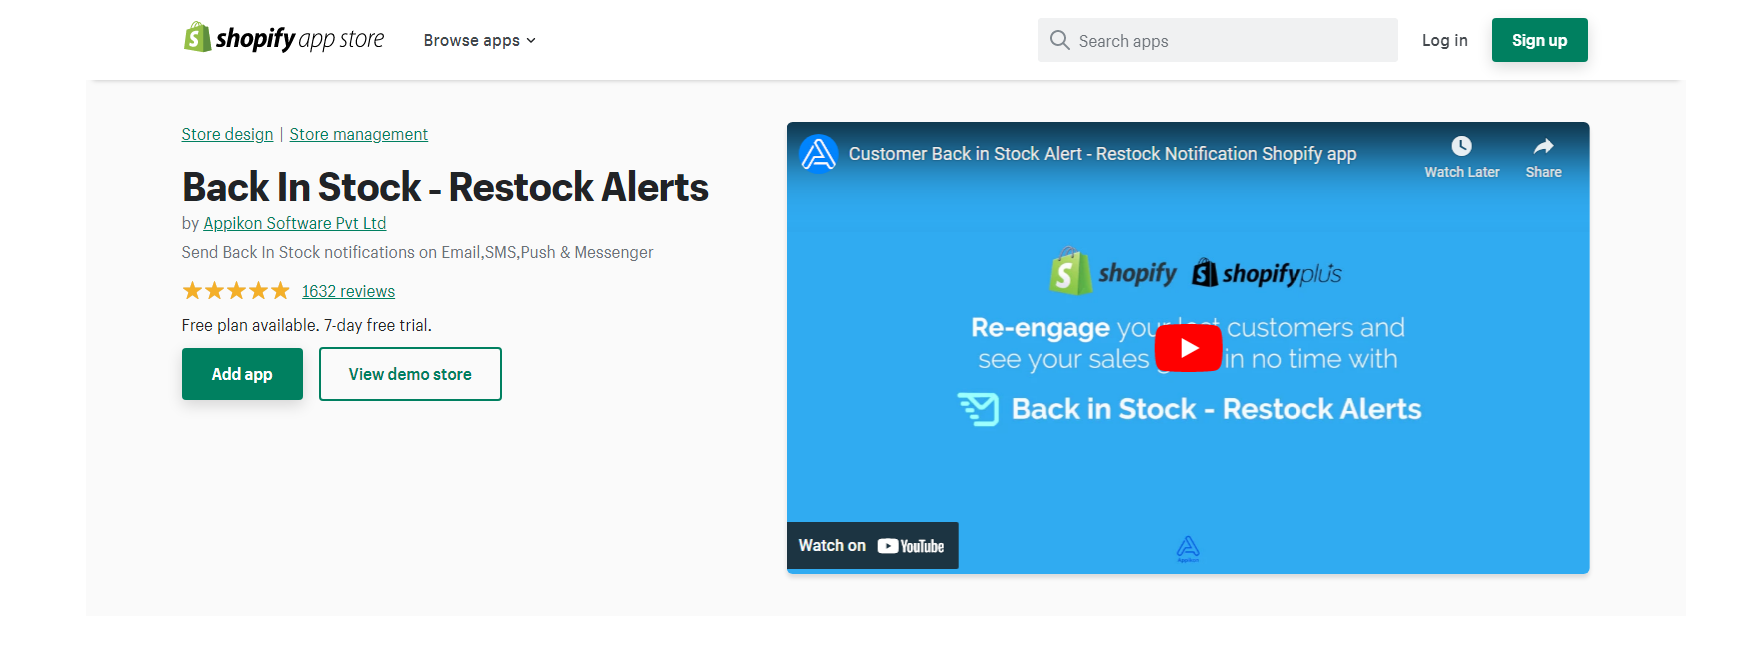 Back in Stock - Restock Alerts - Shopify Back in Stock Apps